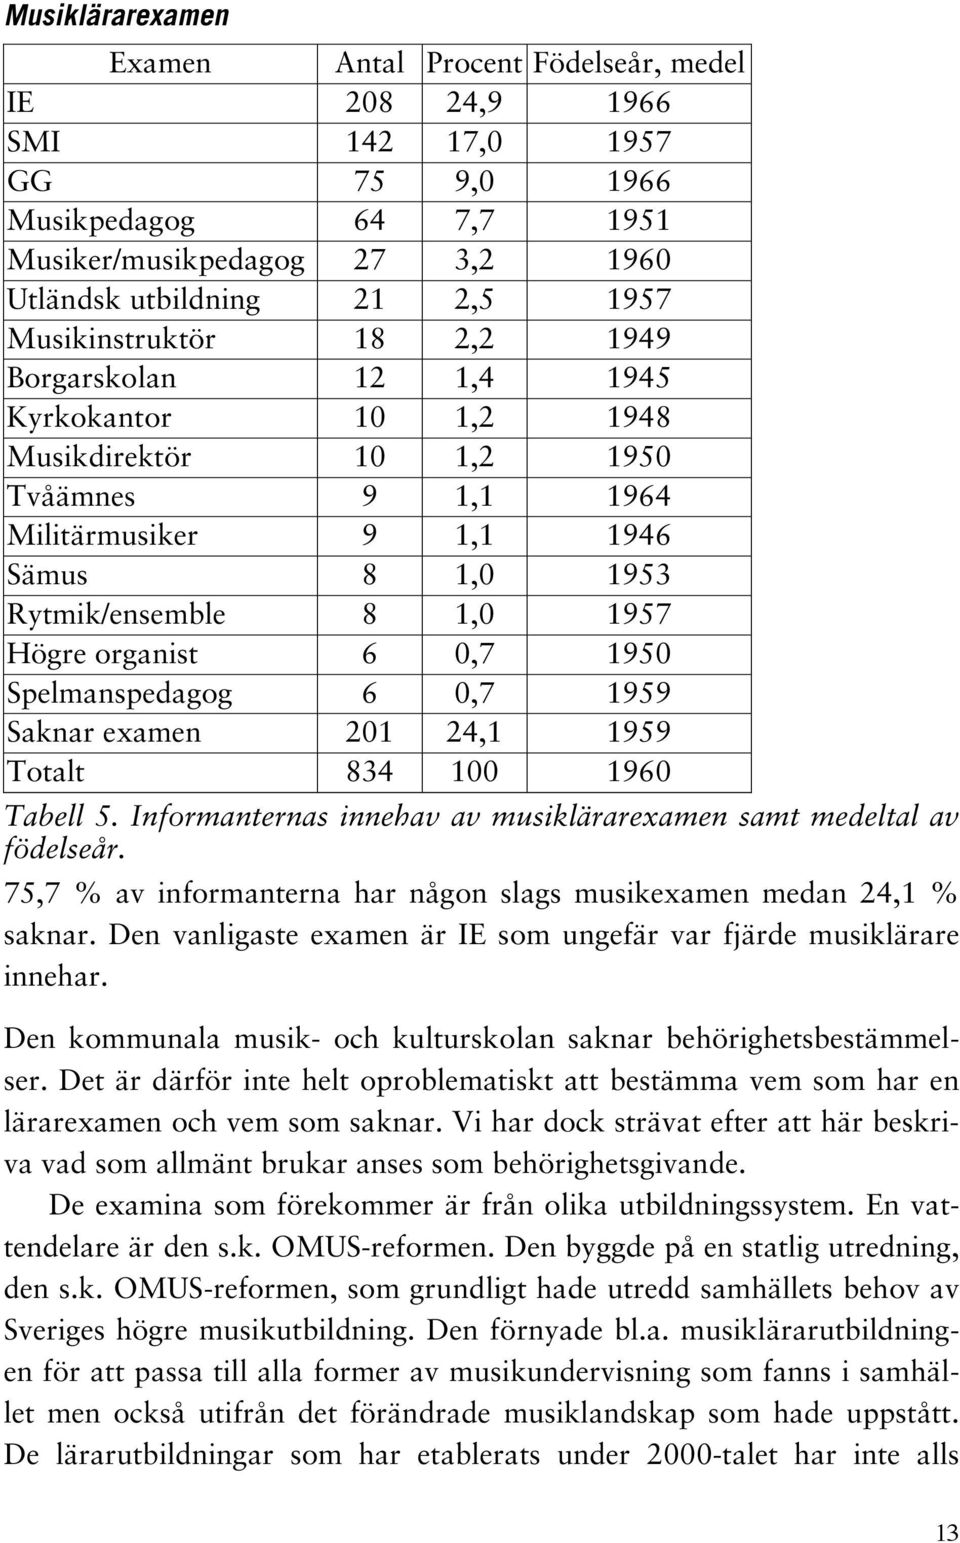 organist 6 0,7 1950 Spelmanspedagog 6 0,7 1959 Saknar examen 201 24,1 1959 Totalt 834 100 1960 Tabell 5. Informanternas innehav av musiklärarexamen samt medeltal av födelseår.